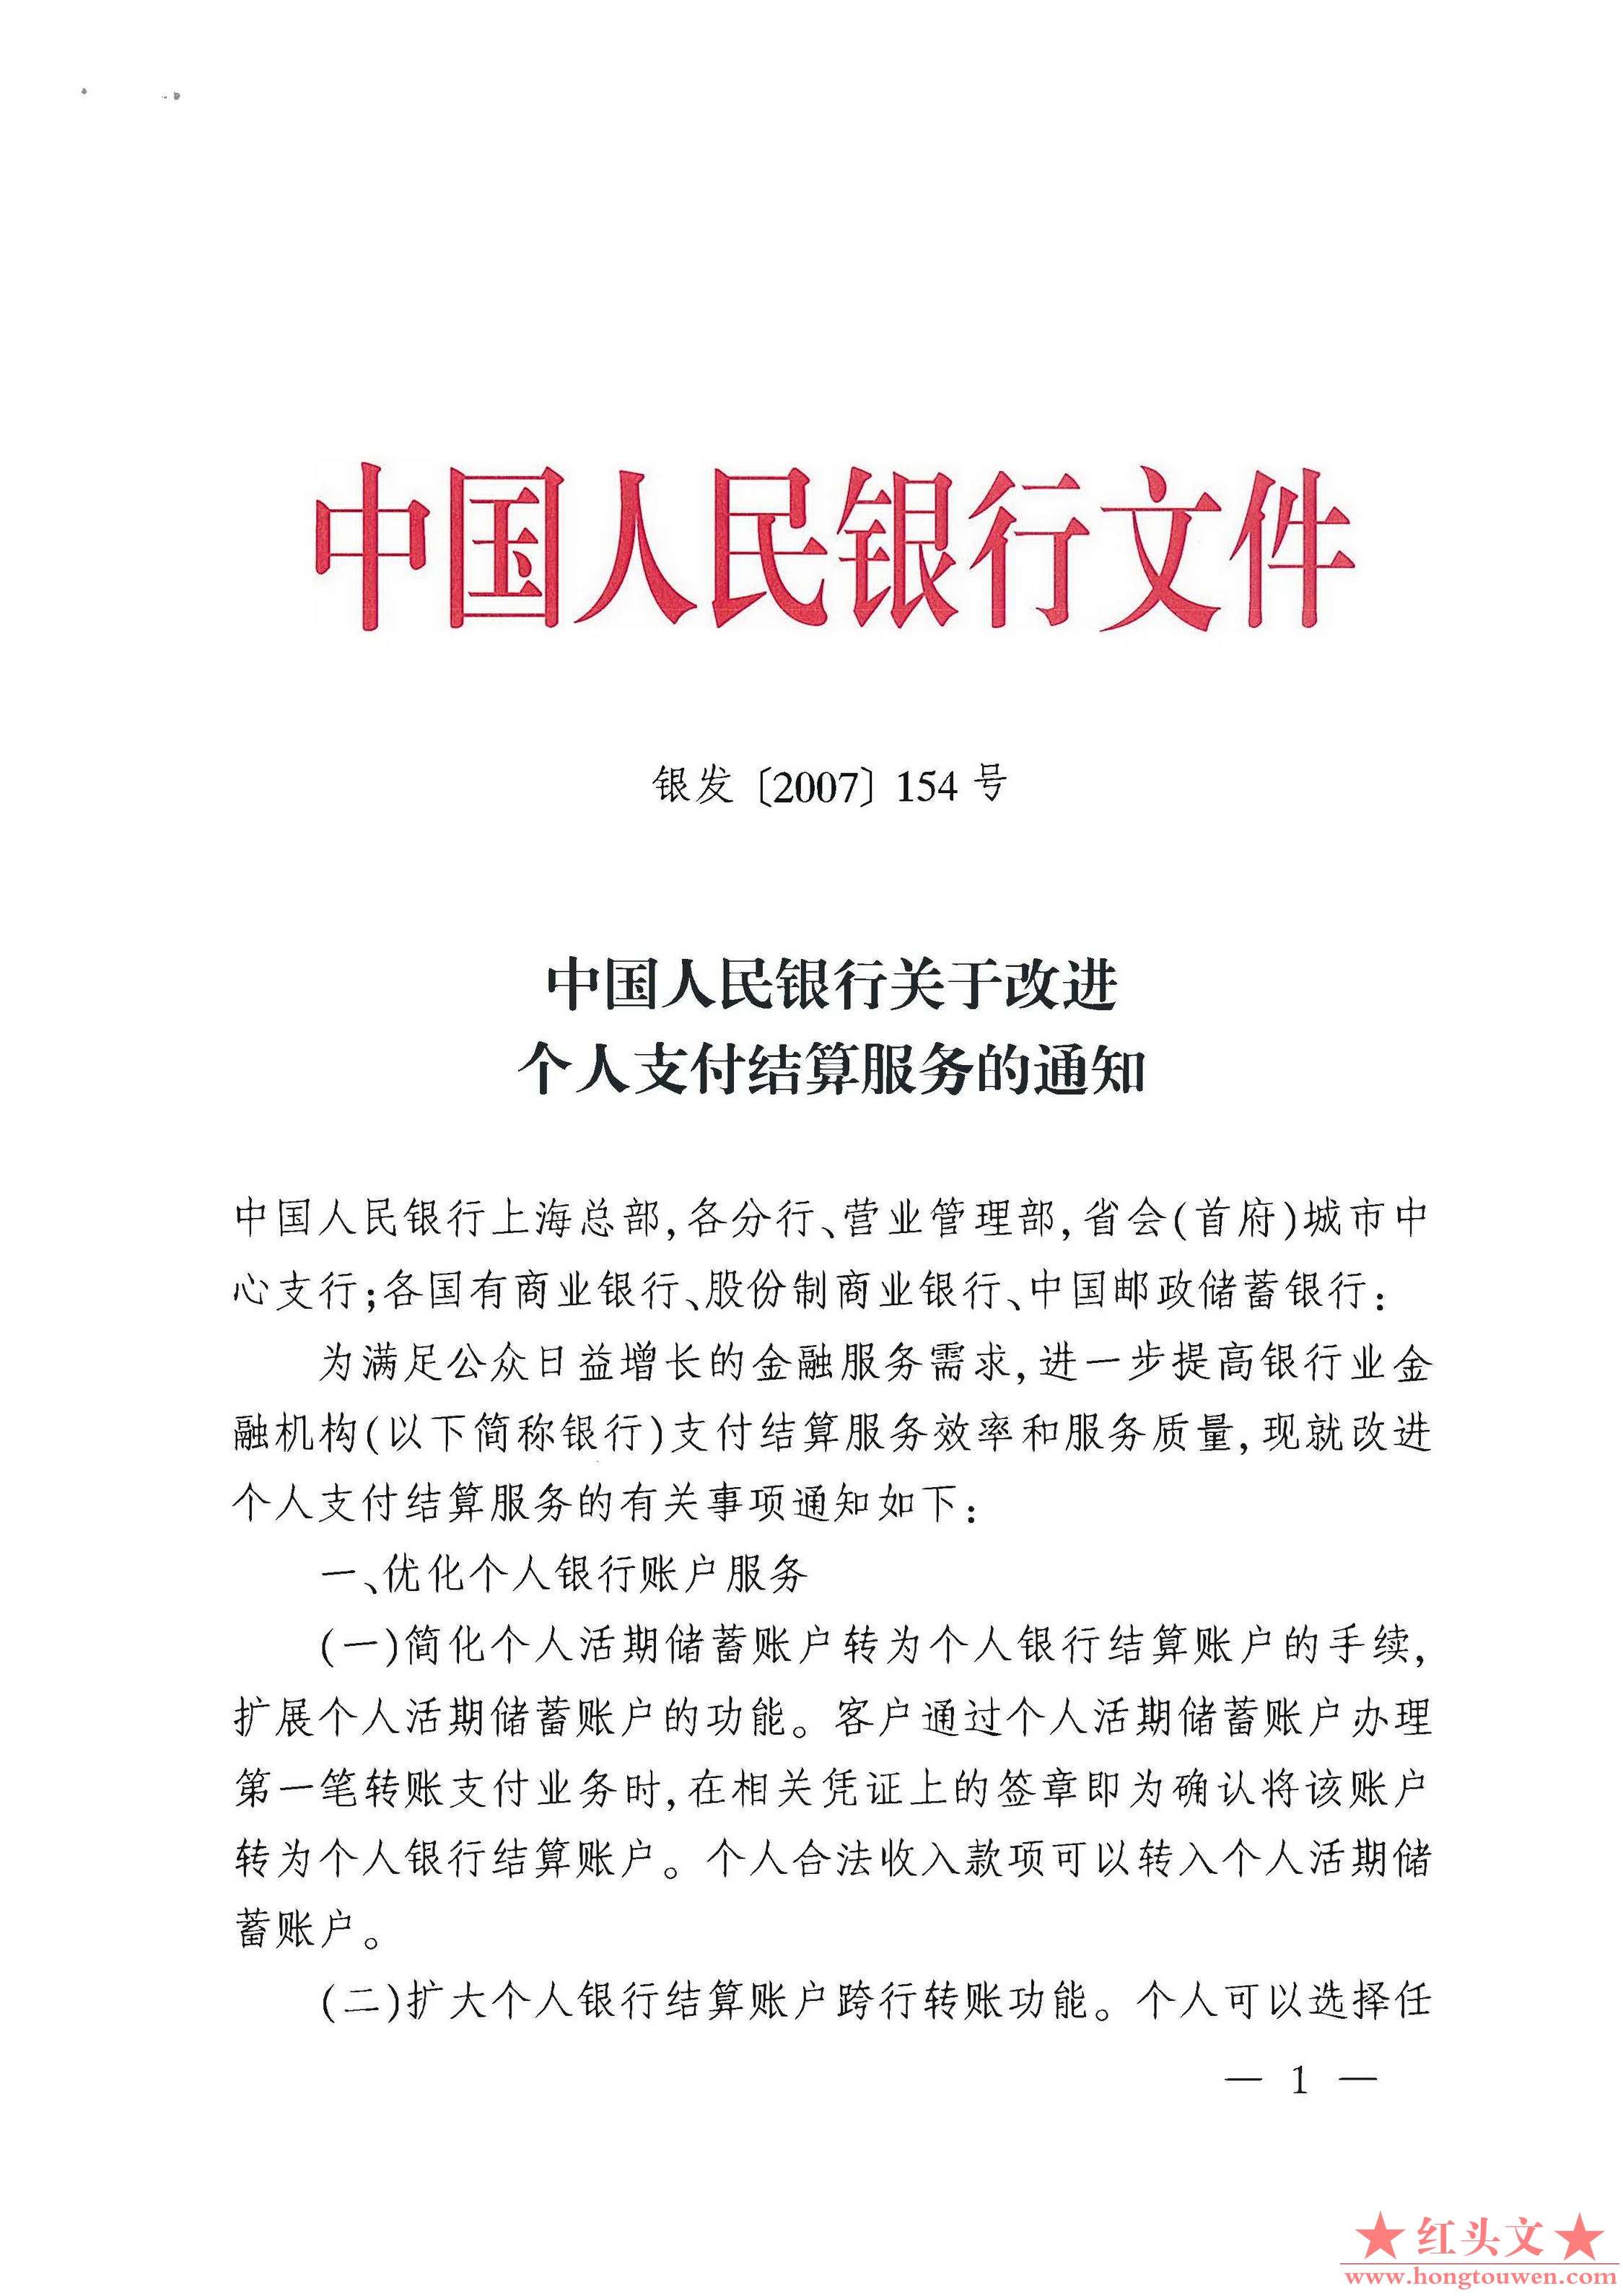 银发[2007]154号-中国人民银行关于改进个人支付结算服务的通知_页面_1.jpg.jpg